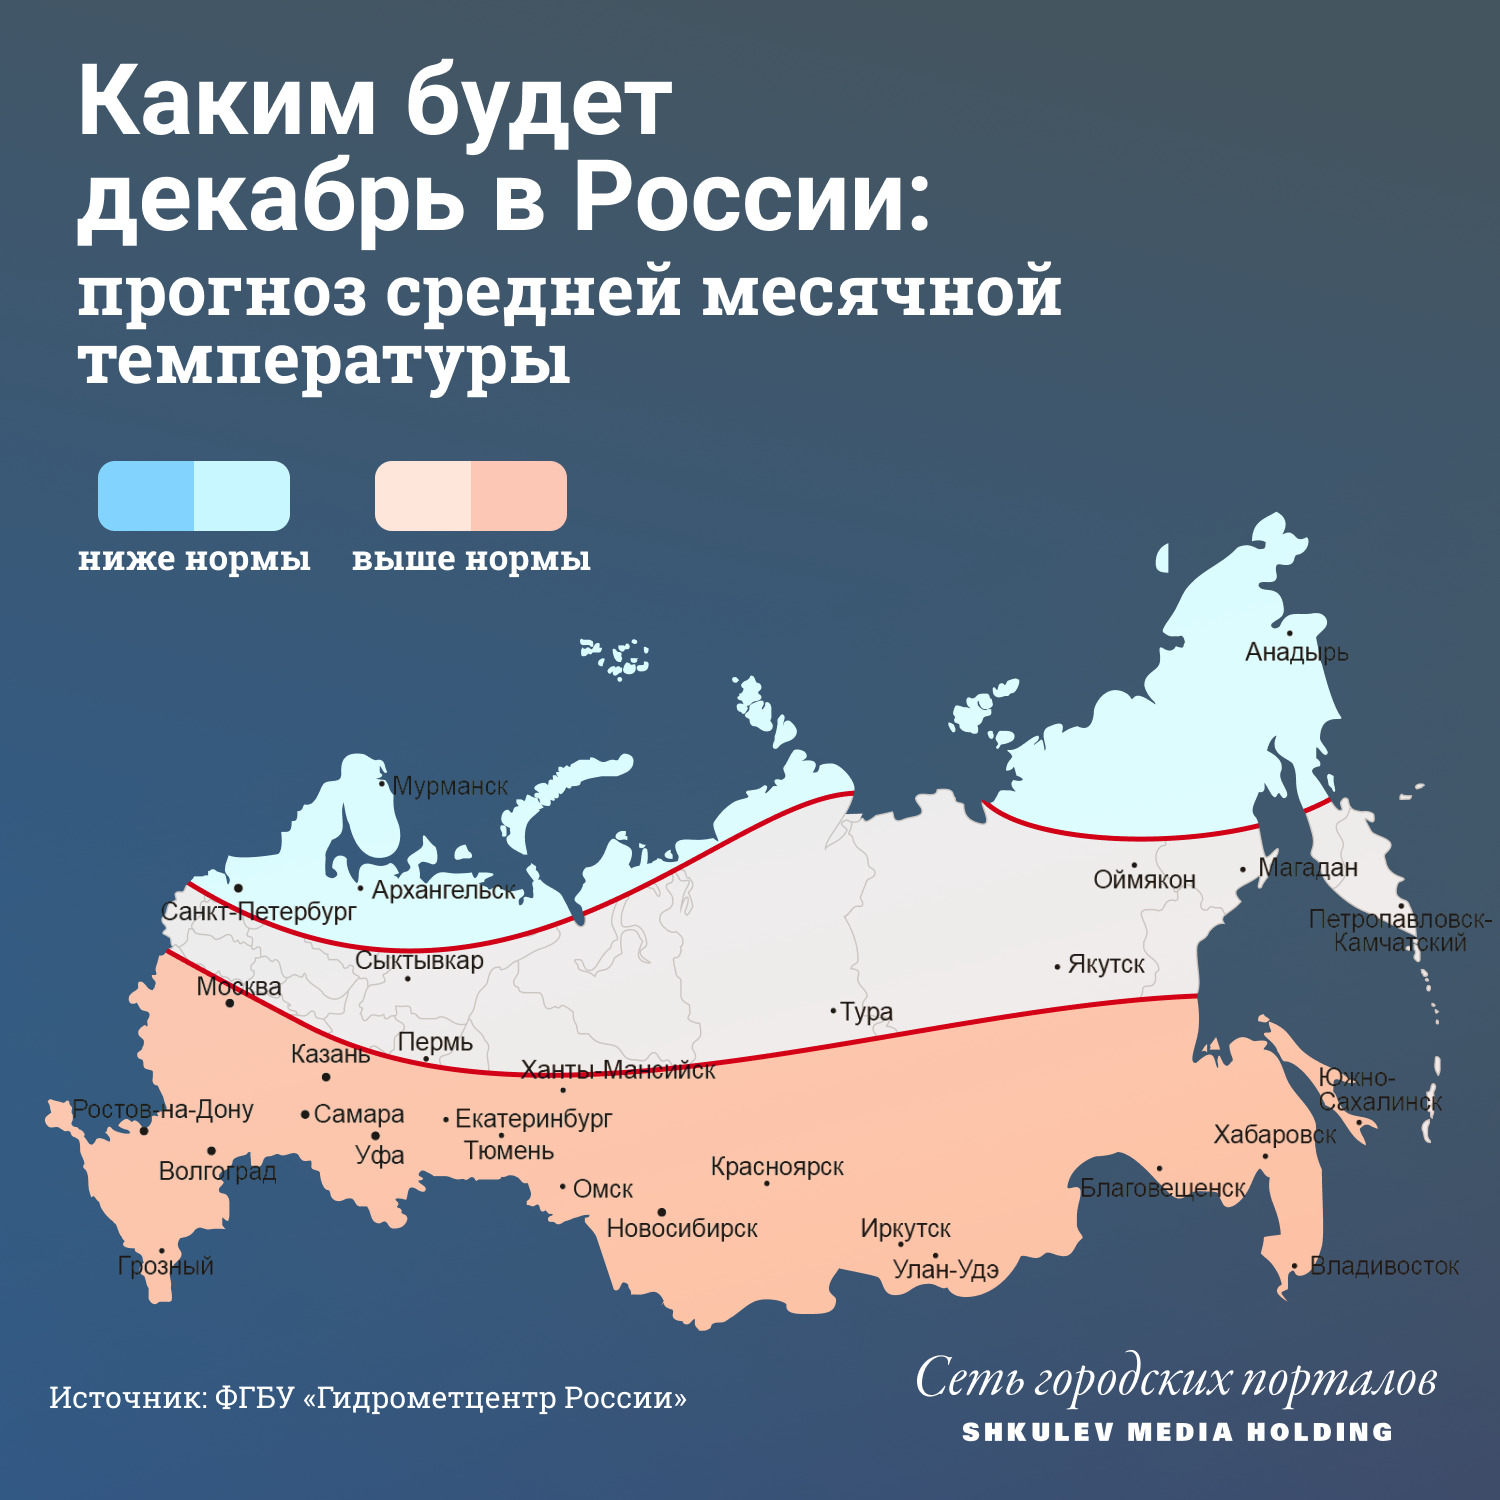 Декабрь обещает быть теплым в большей части России